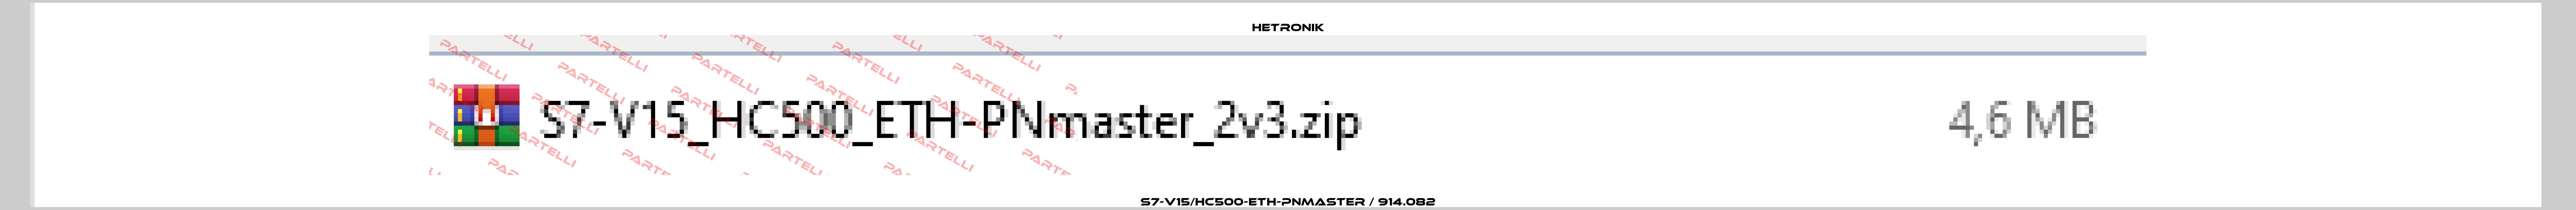 S7-V15/HC500-ETH-PNmaster / 914.082 HETRONIK